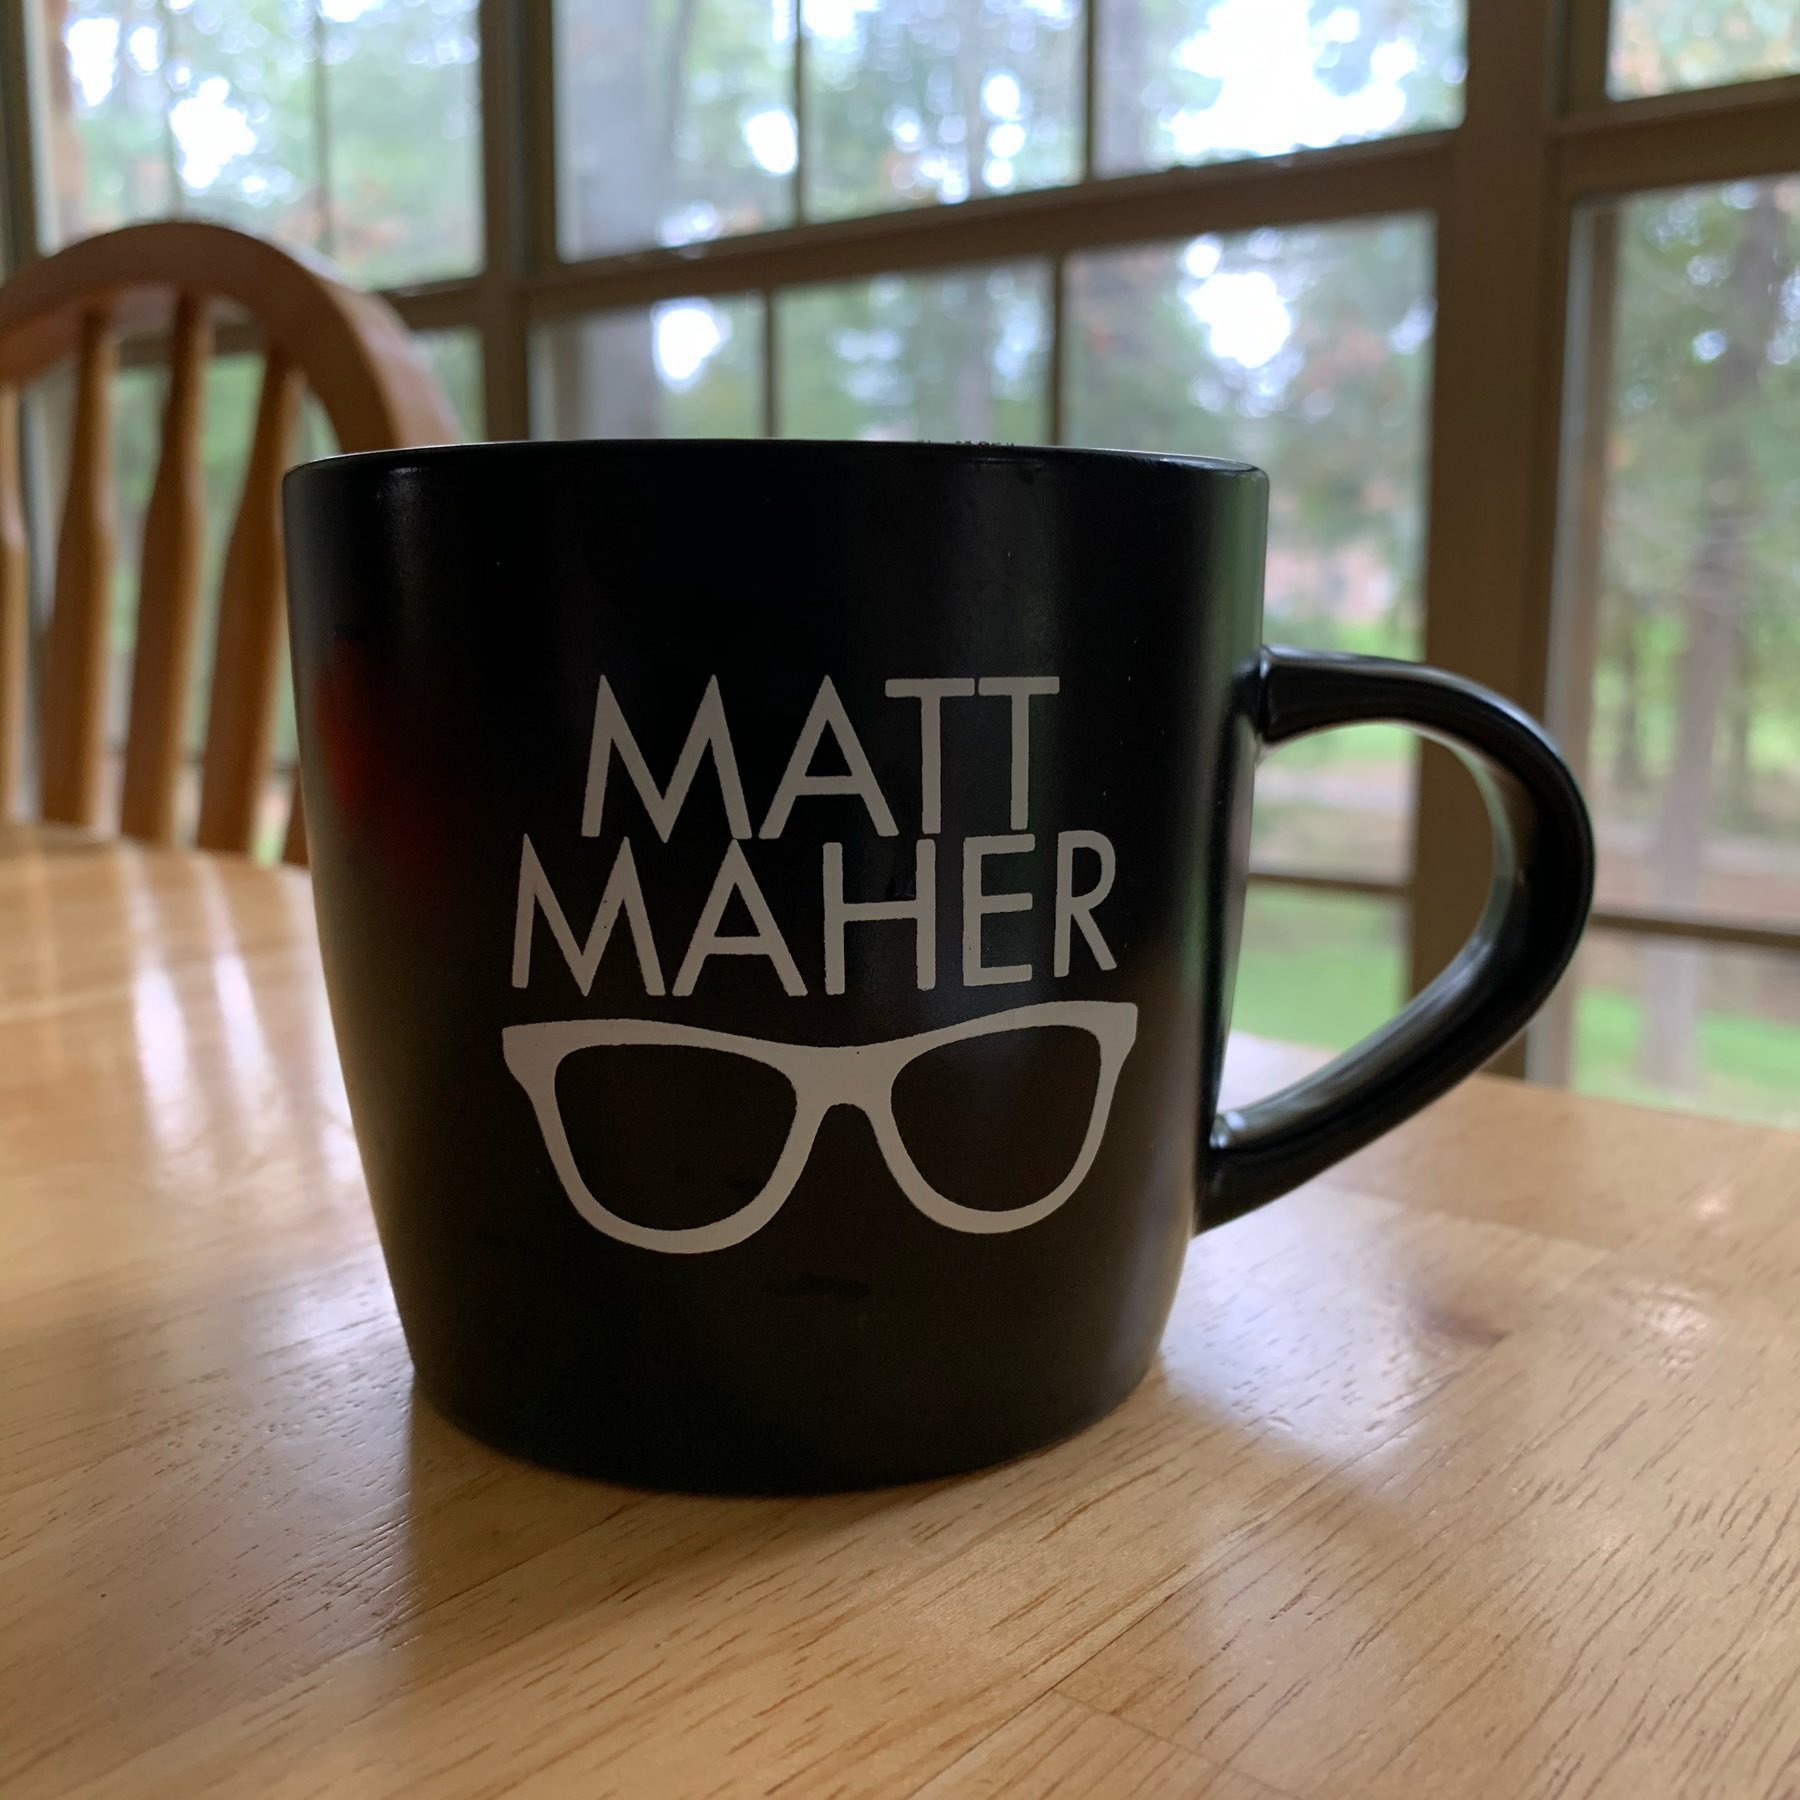 Matt Maher coffee mug